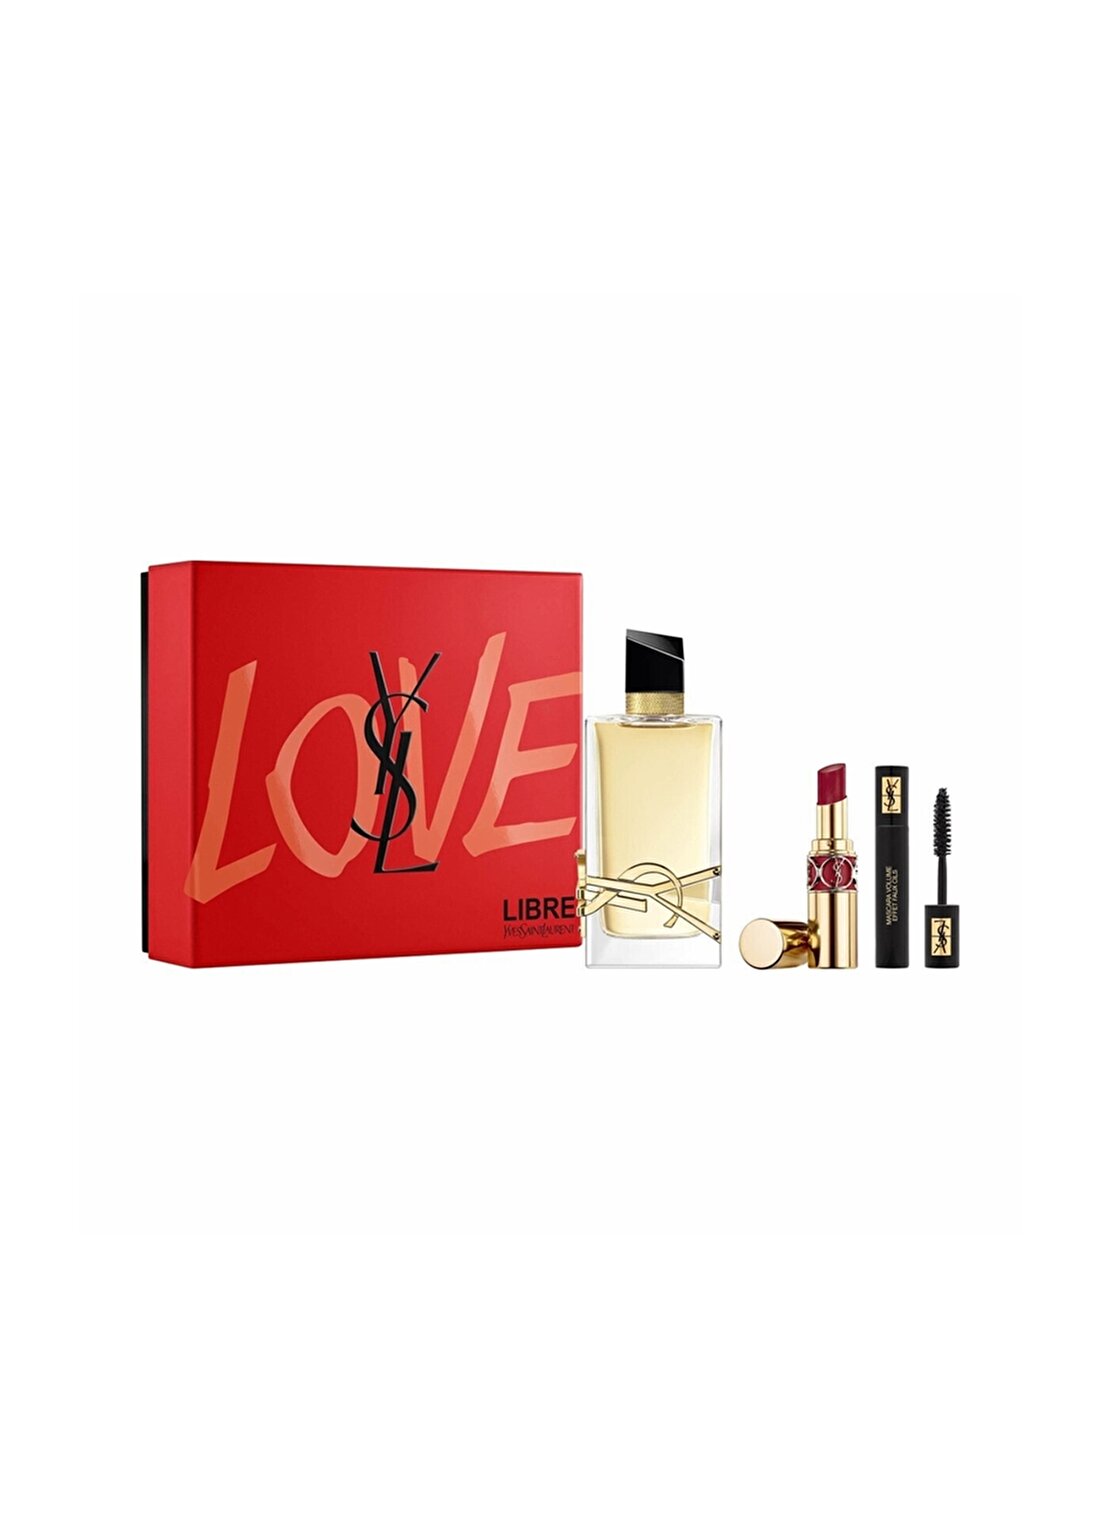 Yves Saint Laurent Libre Eau De Parfum 90 ML, Rouge Volupte Shine 85 Ve Mini Mascara Volume Effet Fa